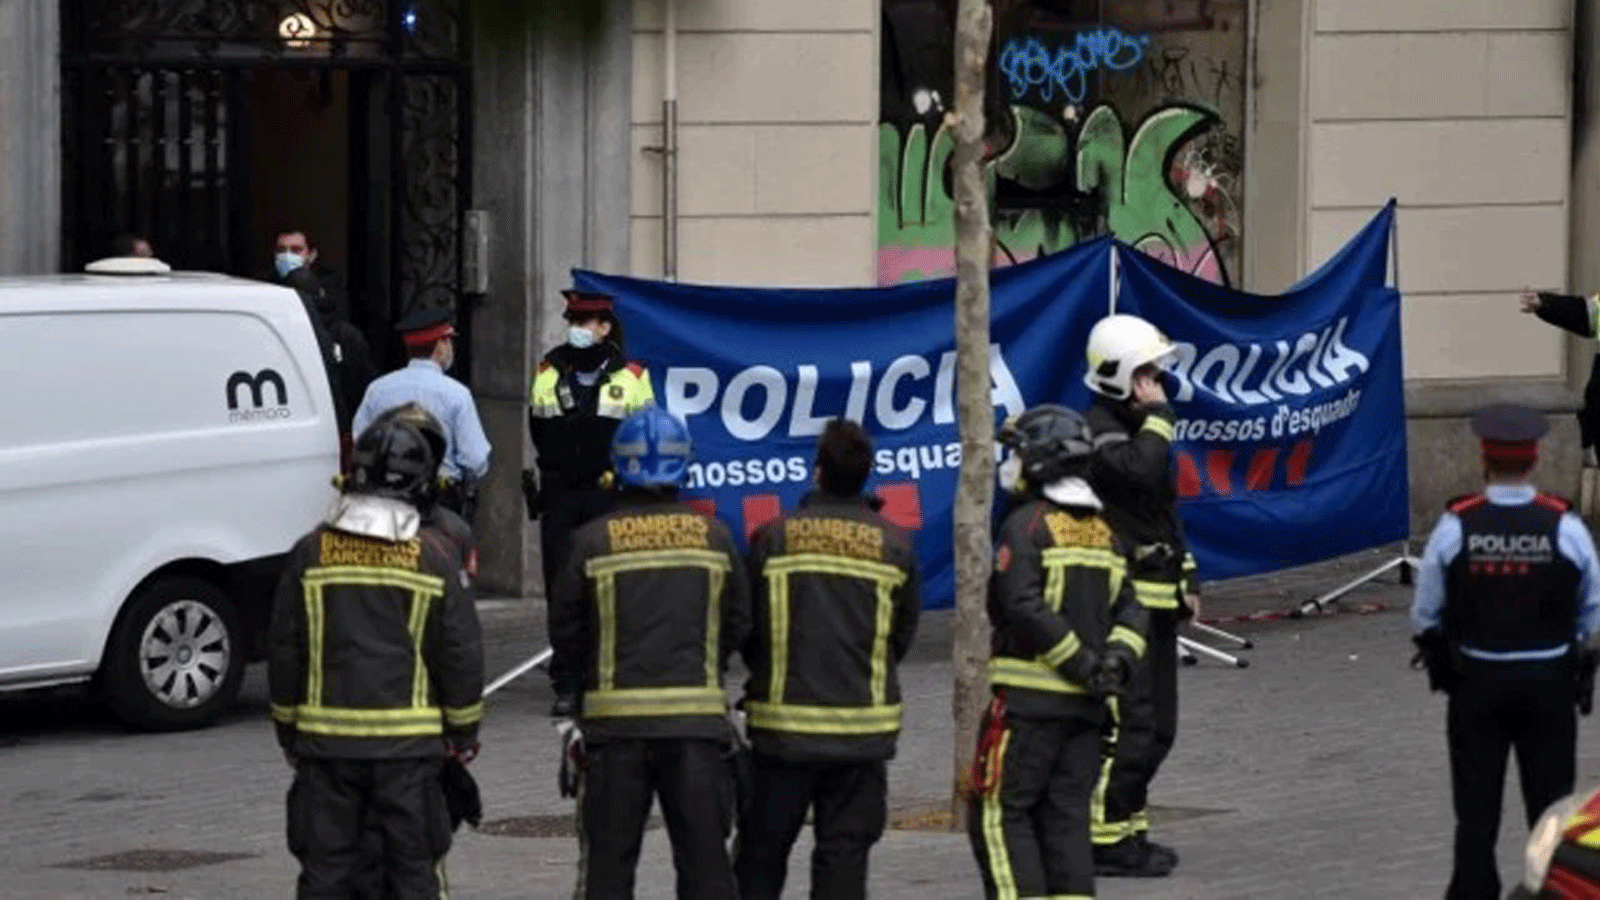 الشرطة ورجال الإطفاء يتجمعون خارج مبنى مهجور حيث اندلع حريق في وقتٍ مبكر بتاريخ 30 تشرين الثاني/نوفمبر 2021 في برشلونة.